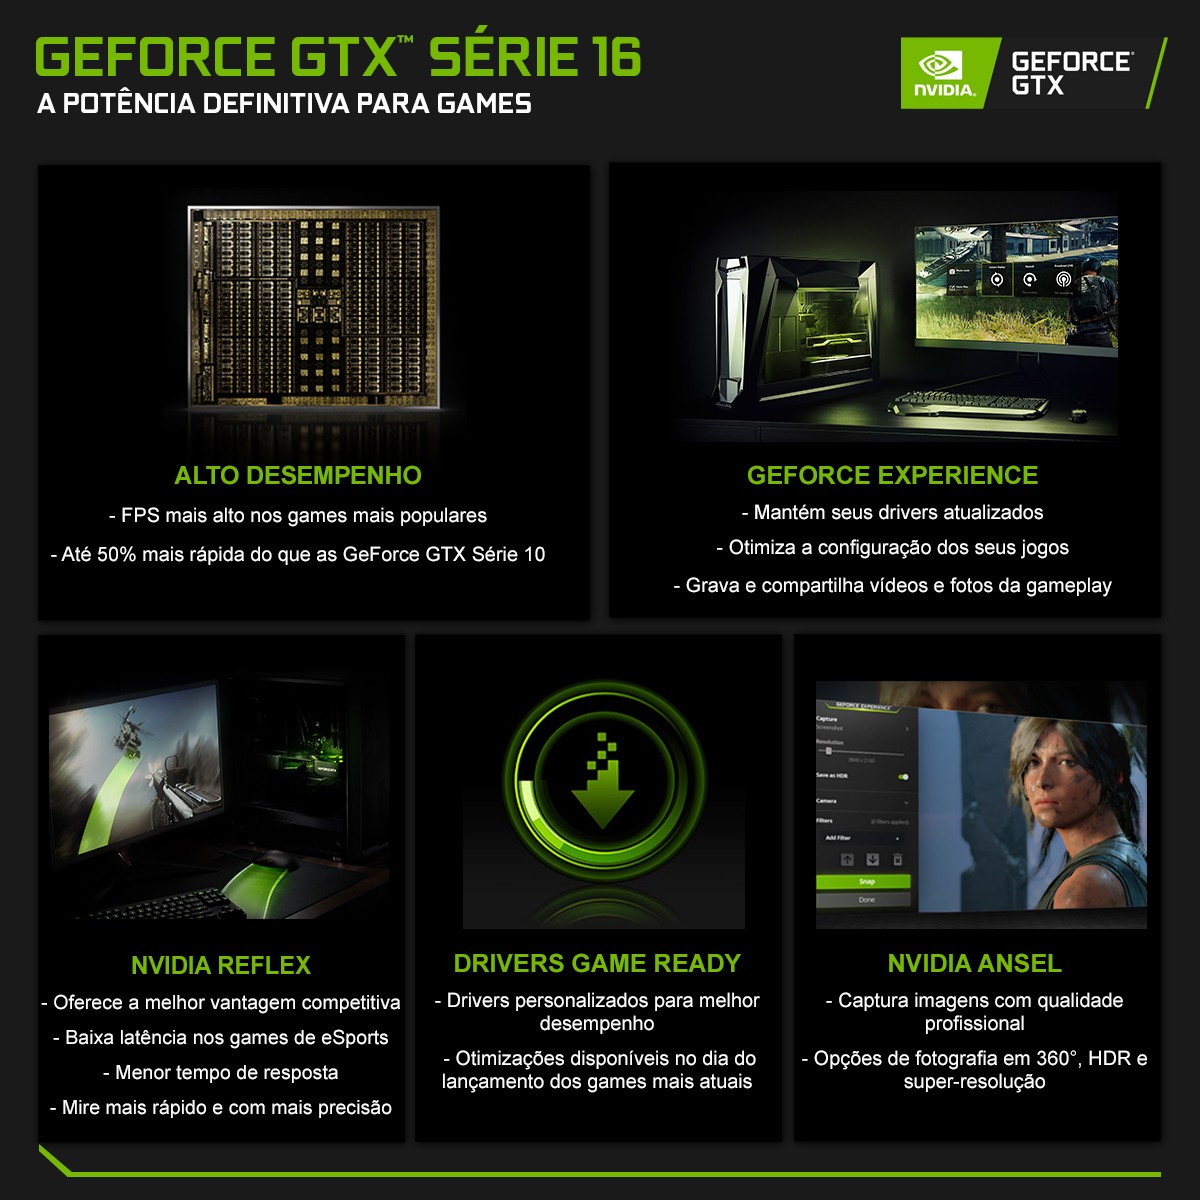 Placa de Vídeo Gigabyte GeForce GTX 1660 OC Dual, 6GB GDDR5, 192Bit, GV-N1660OC-6GD